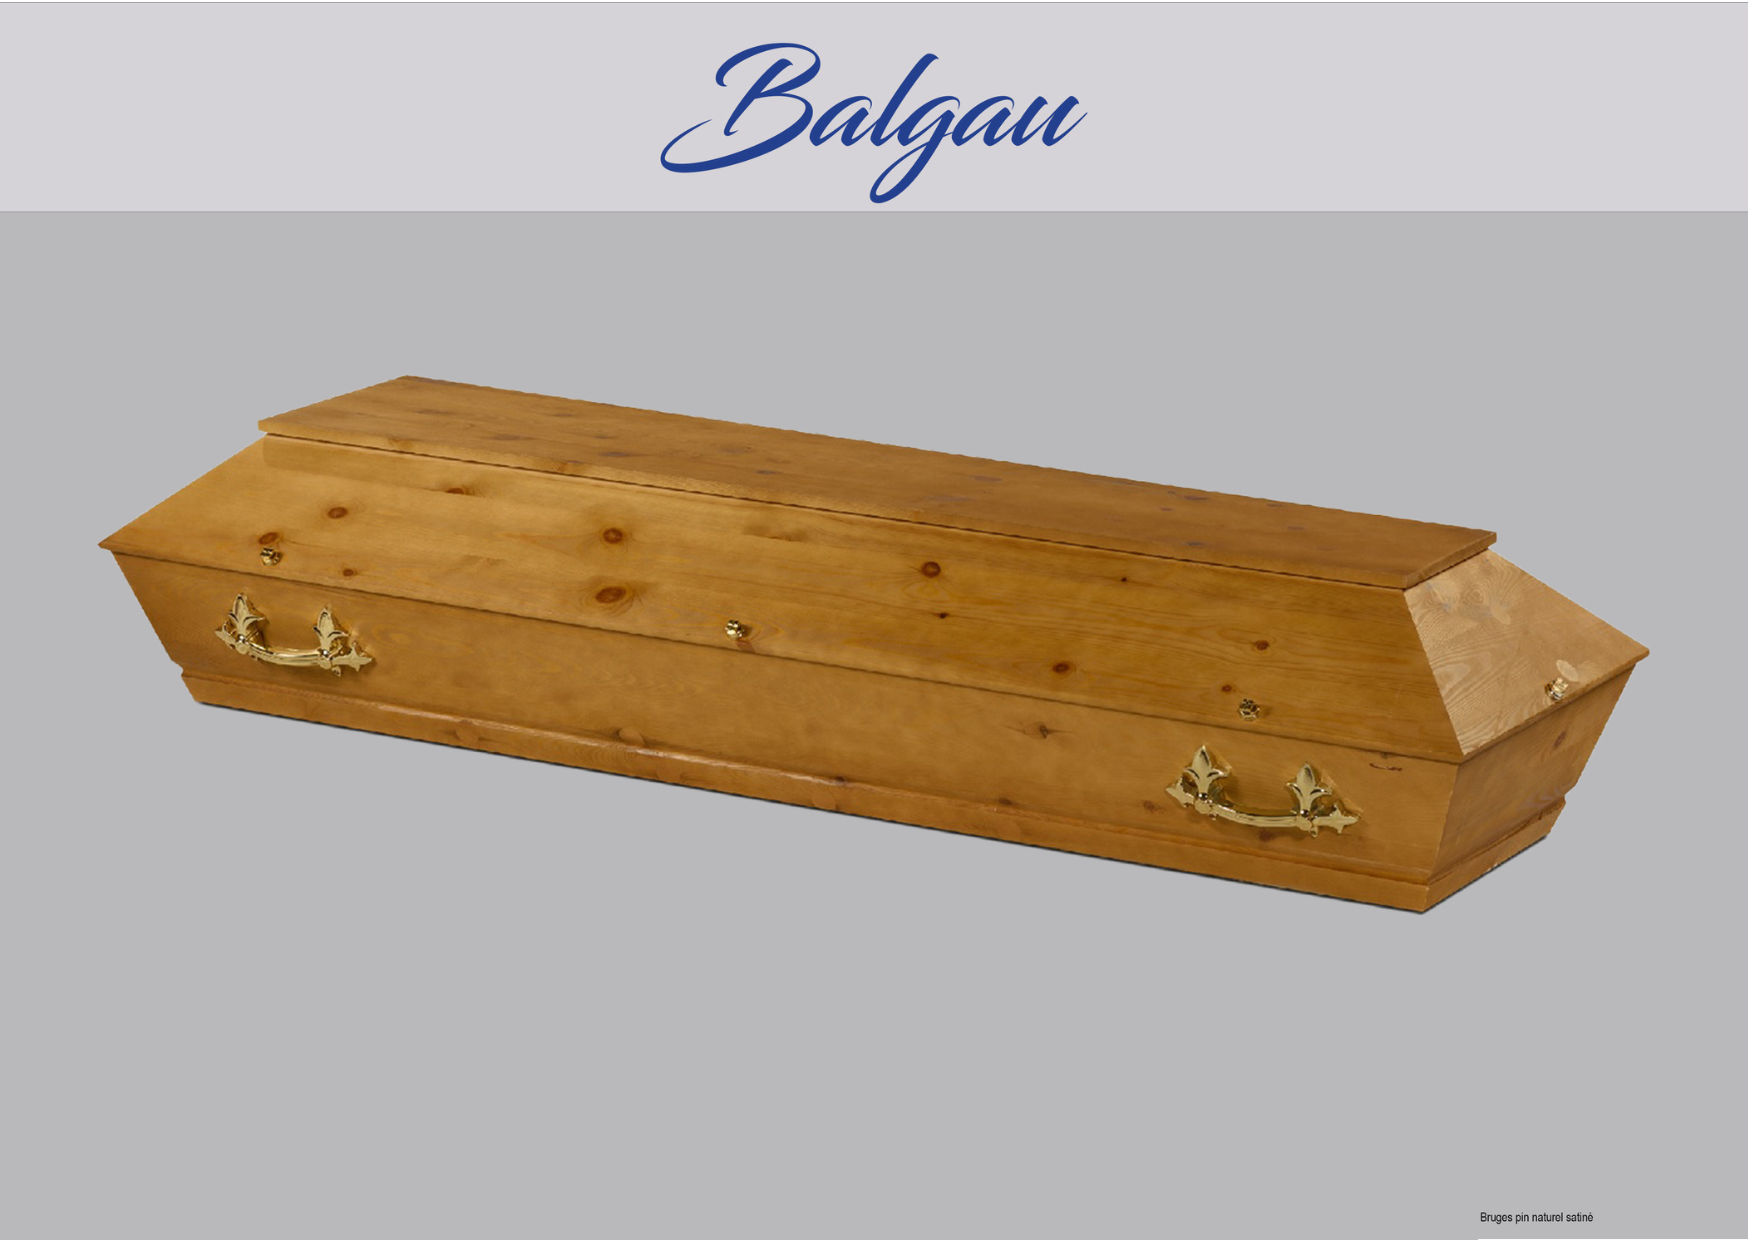 Cercueil Balgau